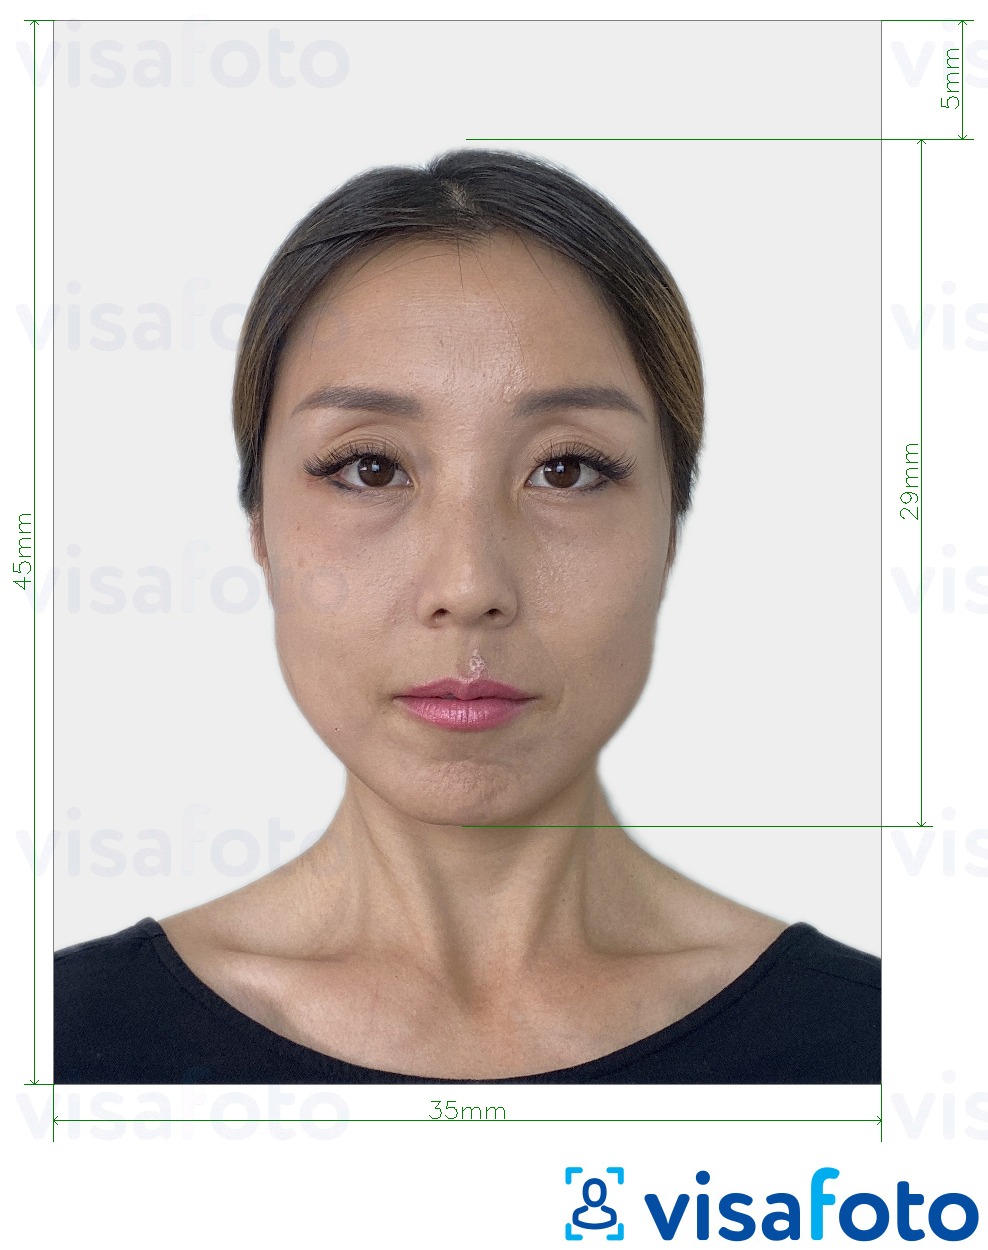 Voorbeeld van foto voor Japan Paspoort 35x45 mm met exacte maatspecificatie